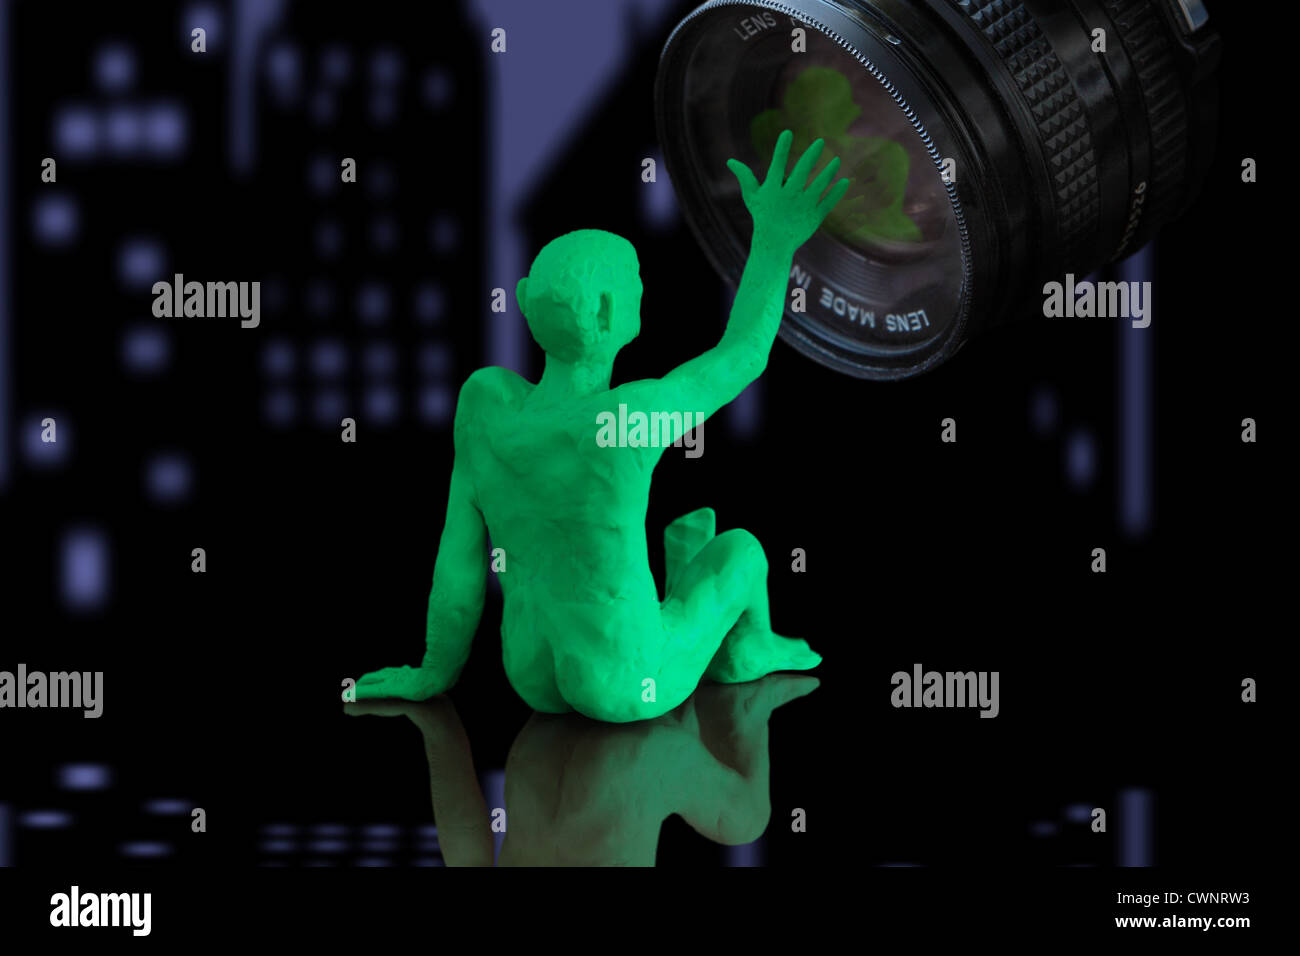 Wir sehen eine Figur, die eine Person darstellt, die sich hinsetzt und mit einer Kameralinse interagiert (Modelliermasse). Stadt bei Nacht im Hintergrund Stockfoto